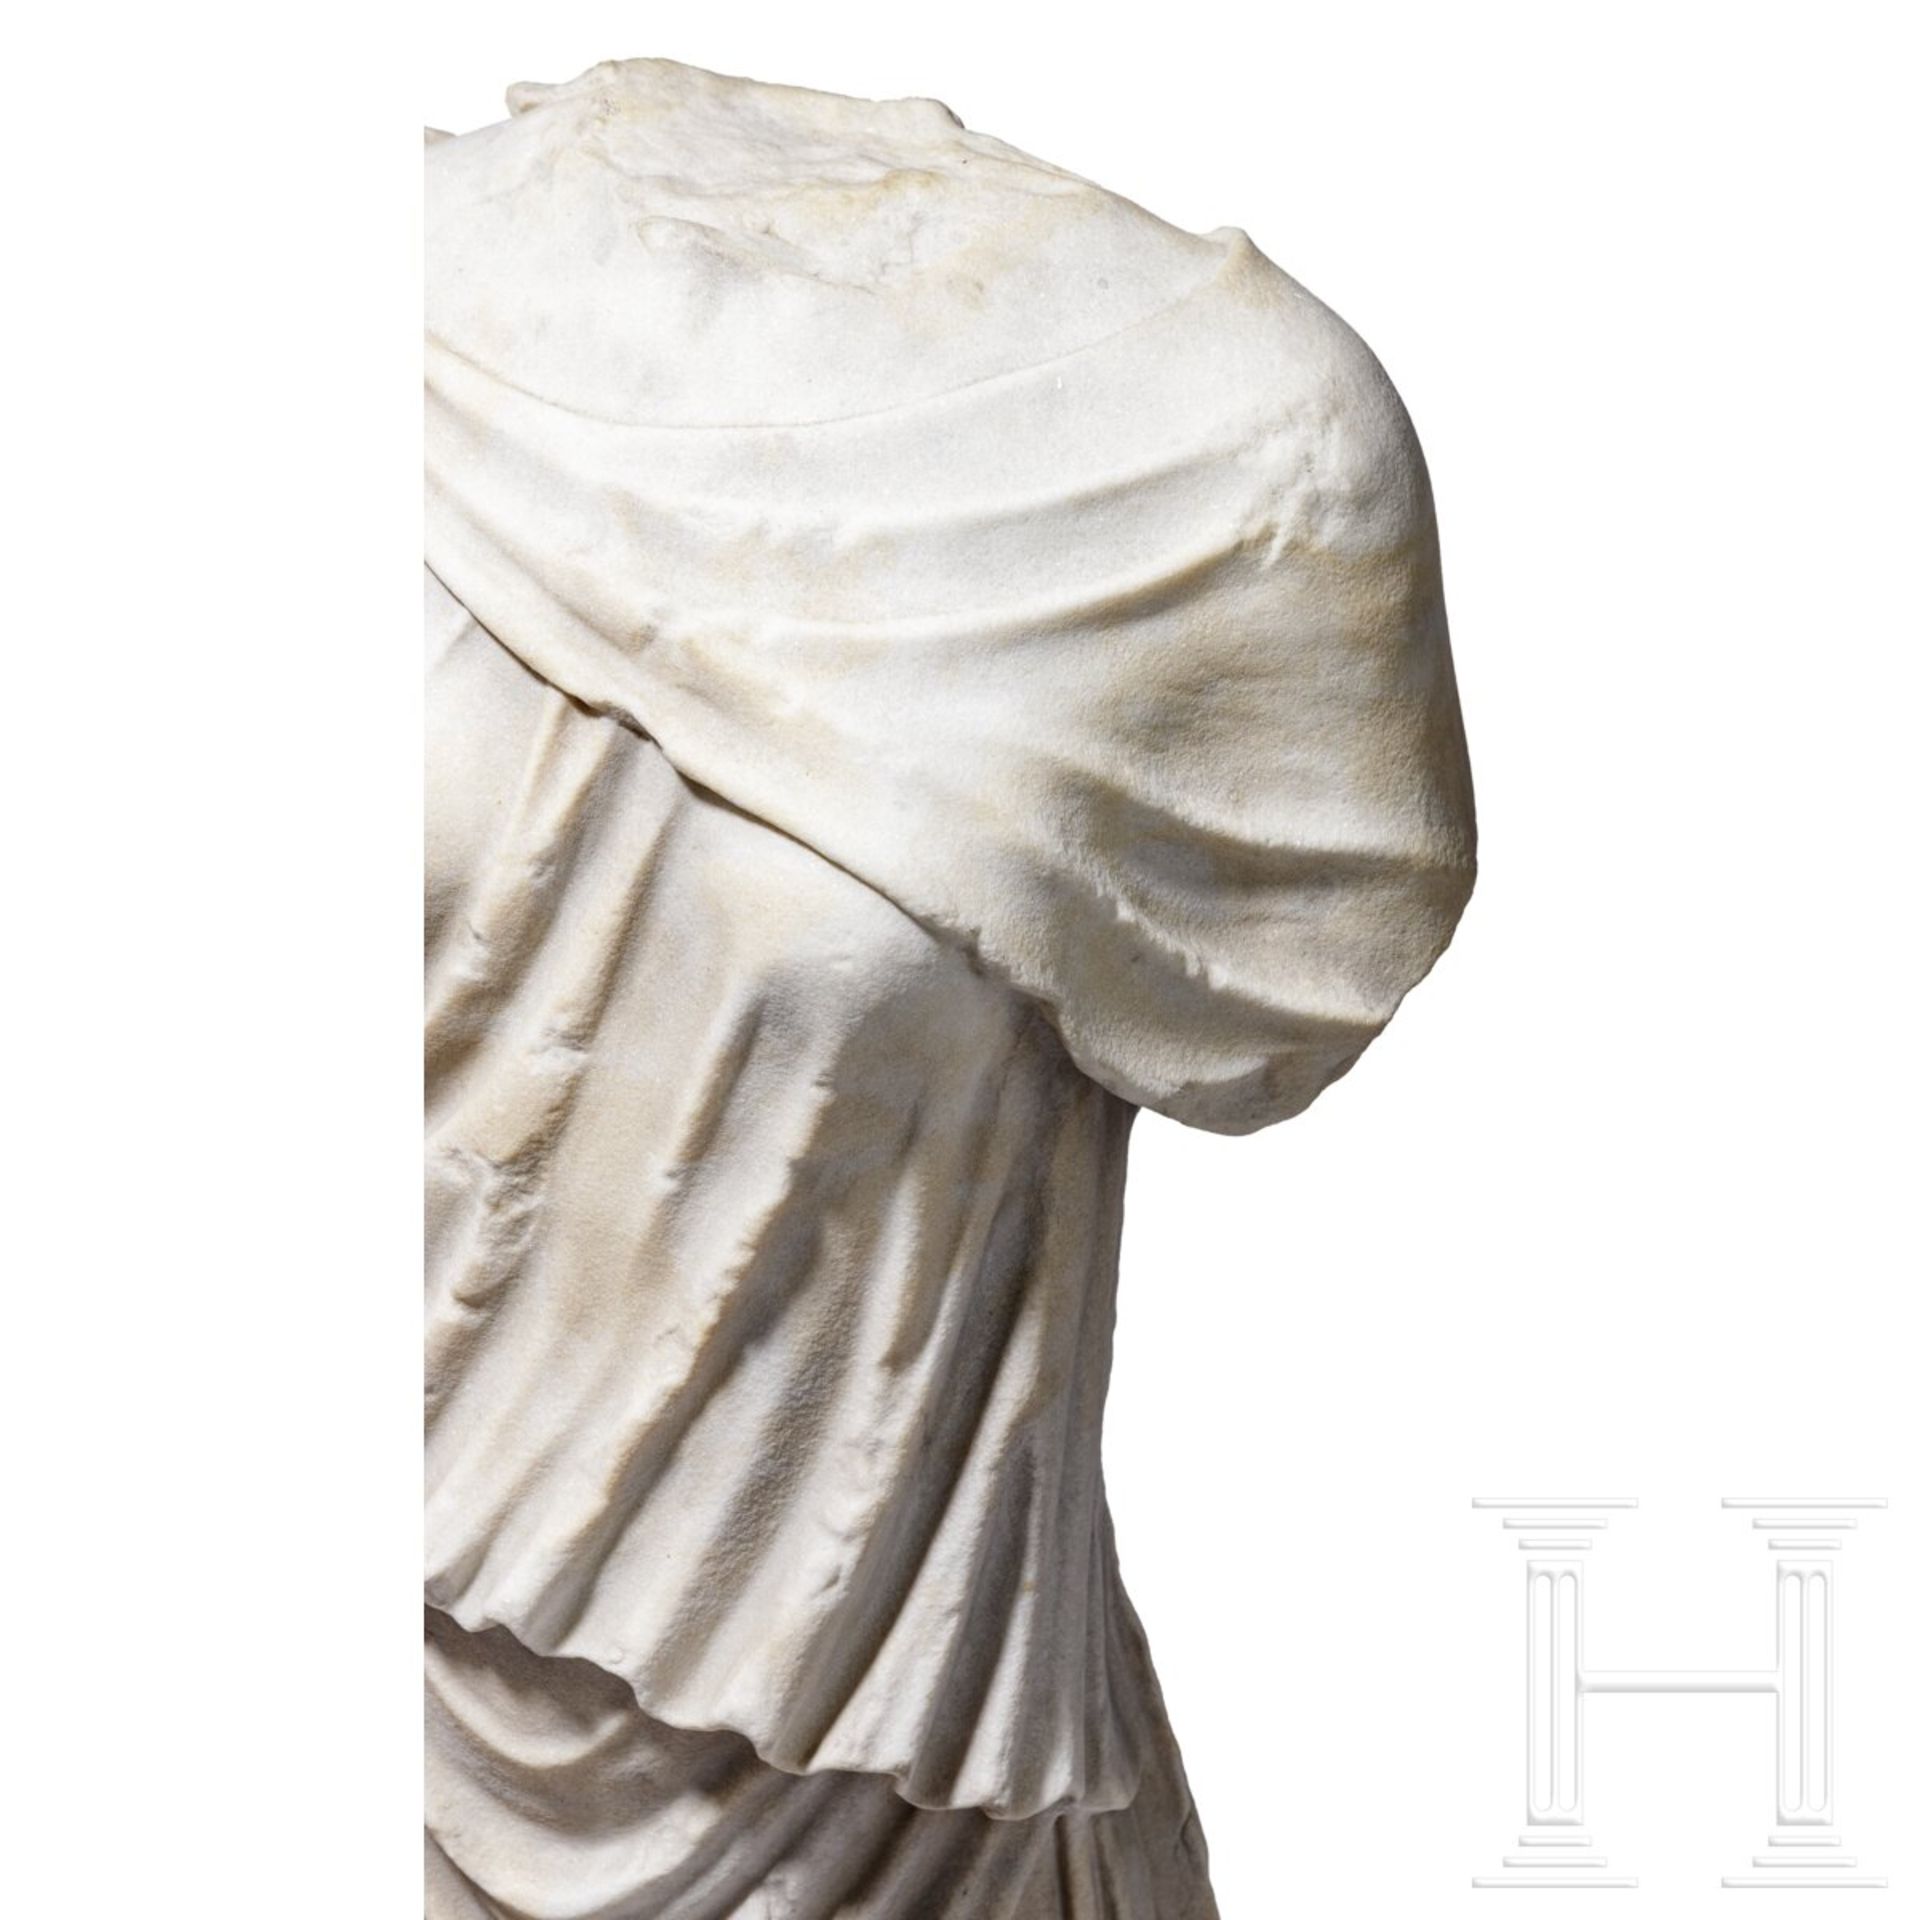 Klassizistischer Marmortorso nach dem Vorbild einer antiken Artemis-Statue, um 1800 - frühes 19. Jhd - Image 6 of 7